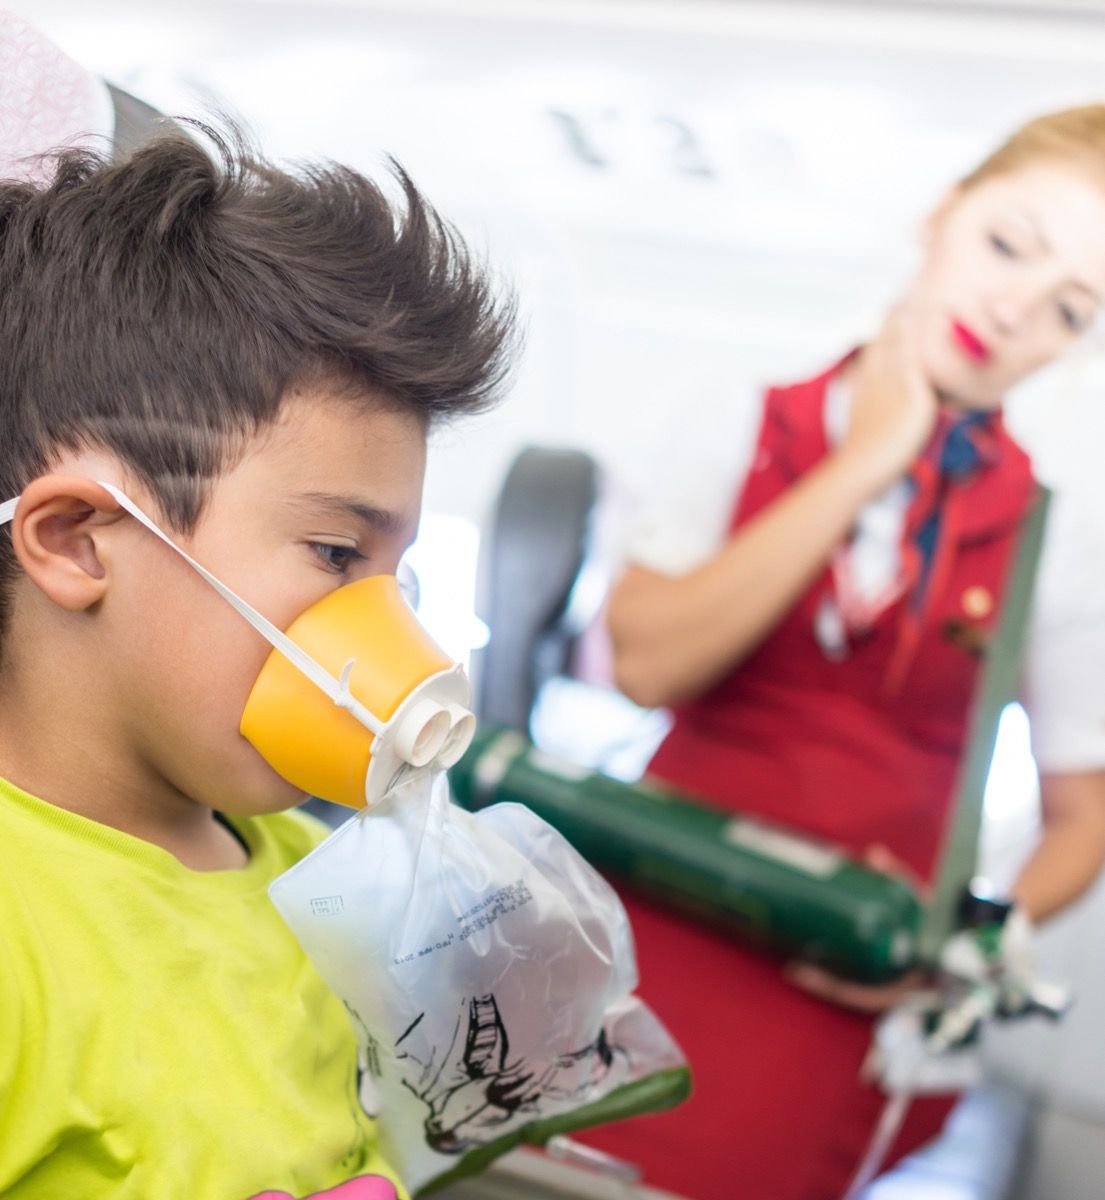 客室乗務員が見ているように酸素マスクを持った飛行機の座席にいる男の子、イライラした客室乗務員